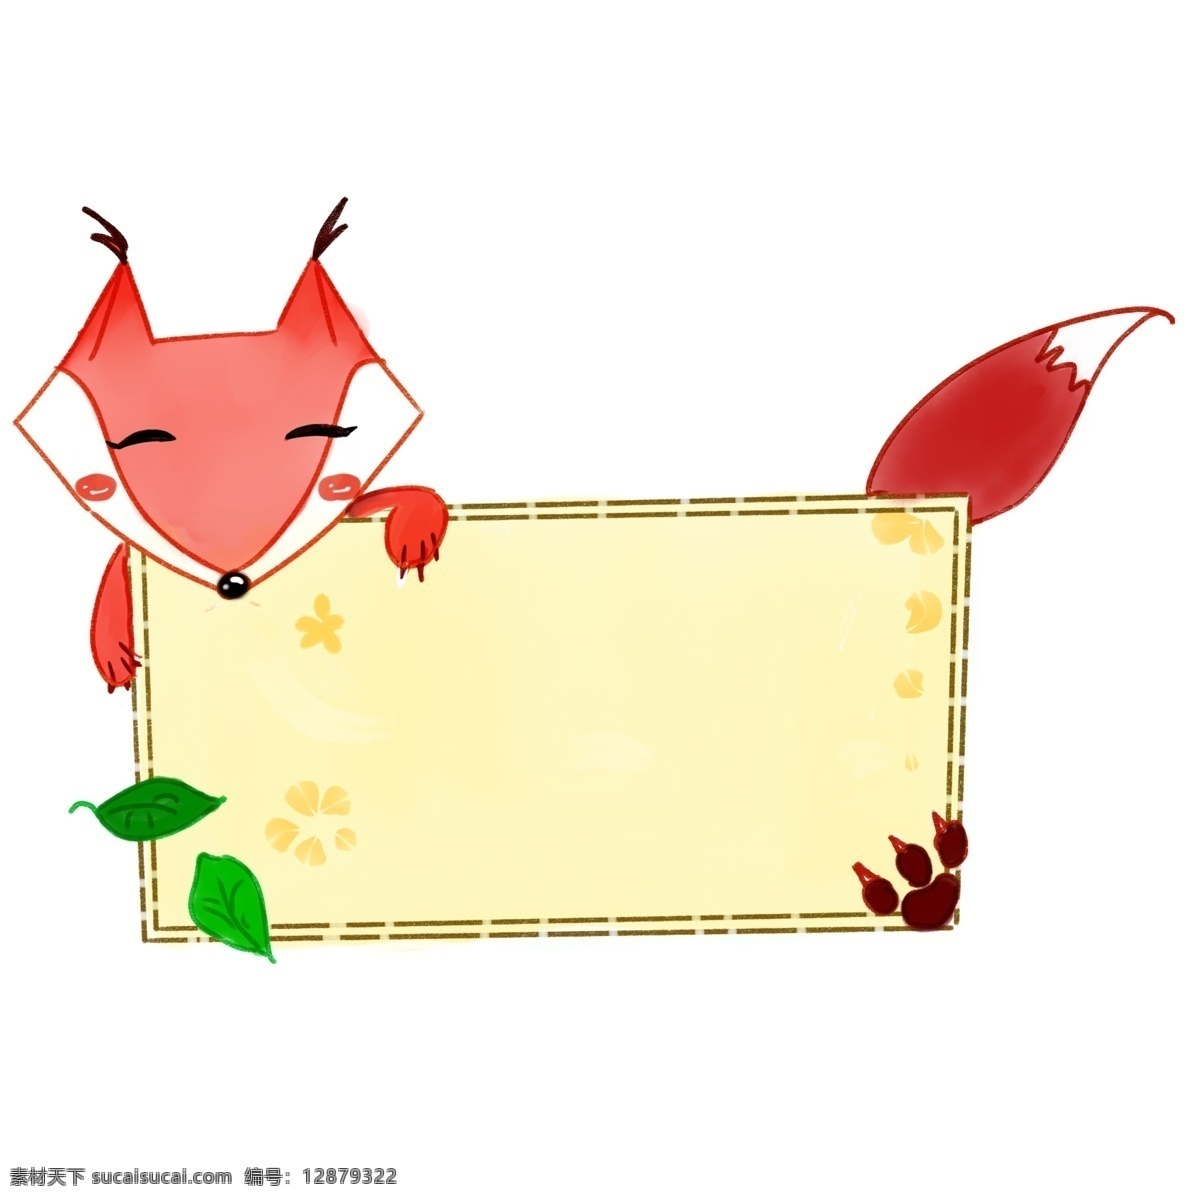 卡通 动物 狐狸 边框 方框 可爱方框 狐狸方框 红色狐狸 绿色树叶 插画 动物方框 狐狸边框